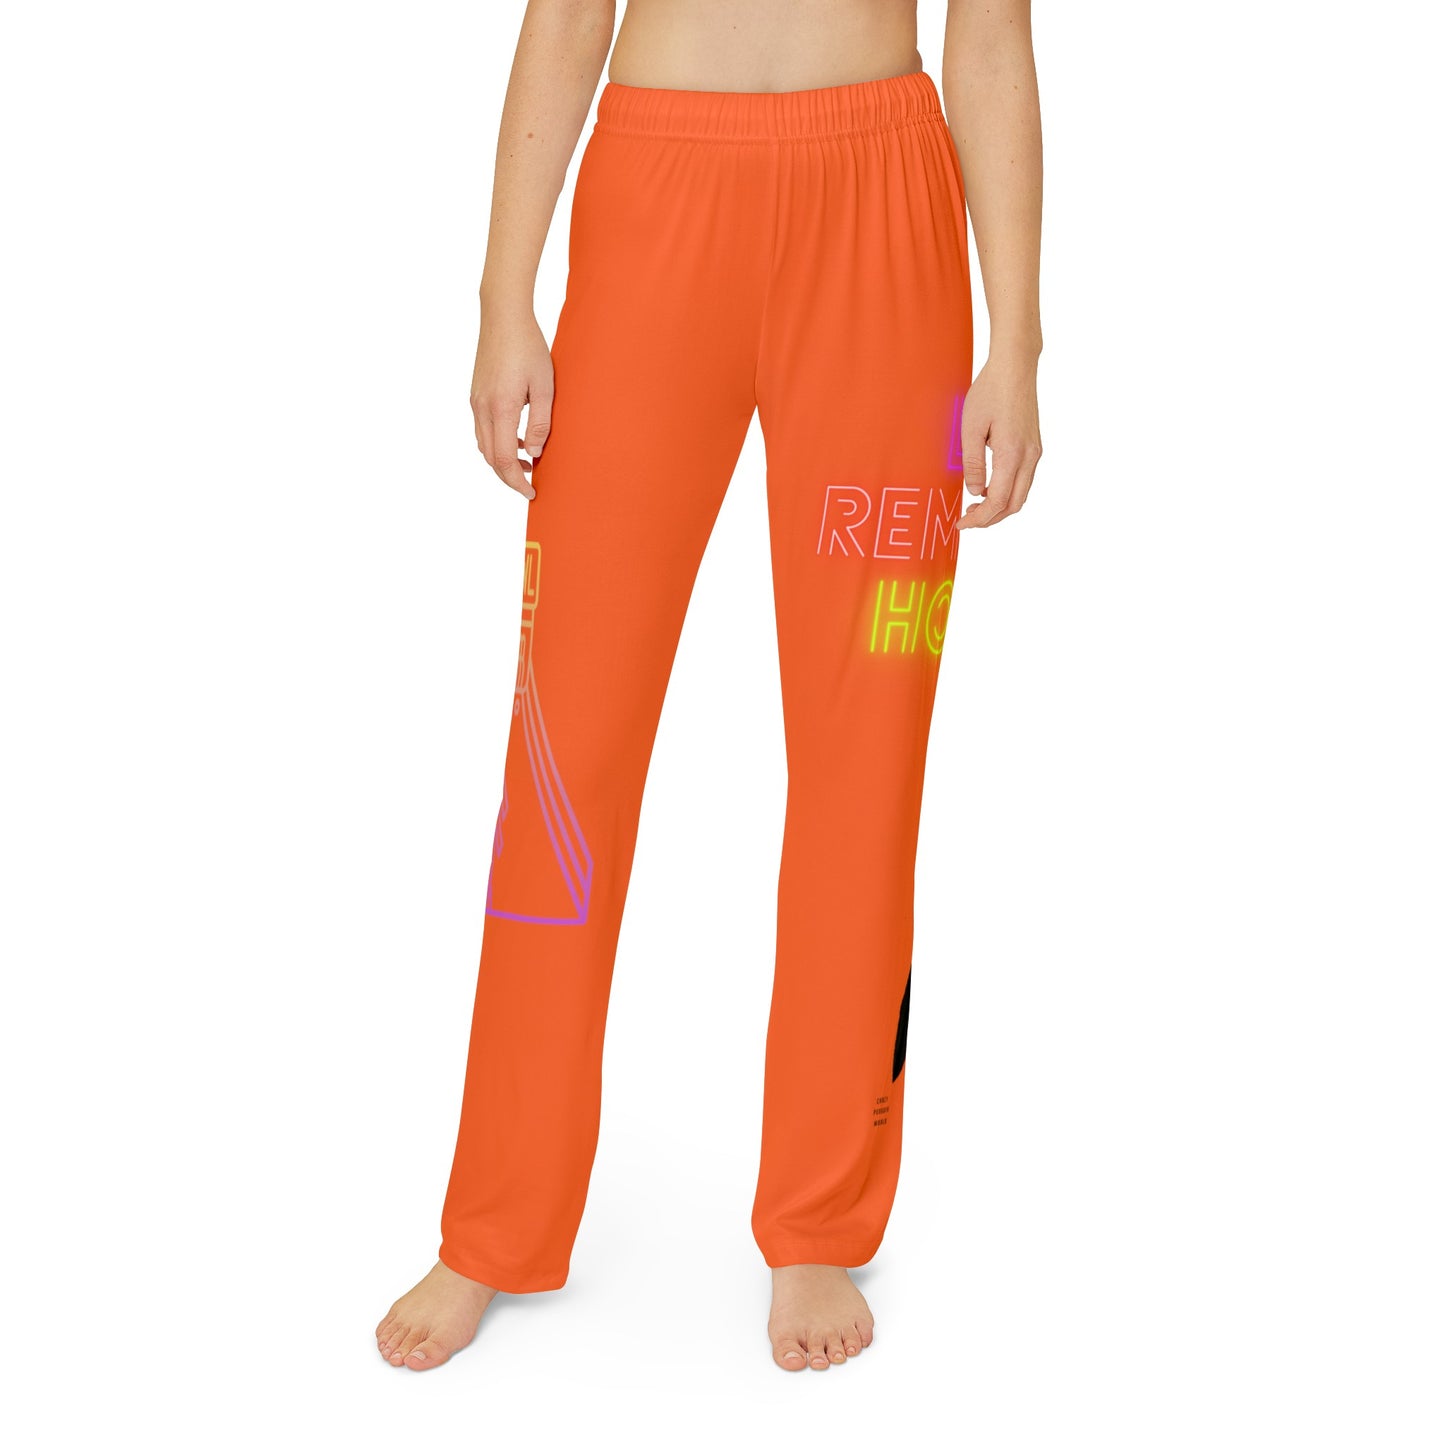 Kids Pajama Pants: Bowling Orange